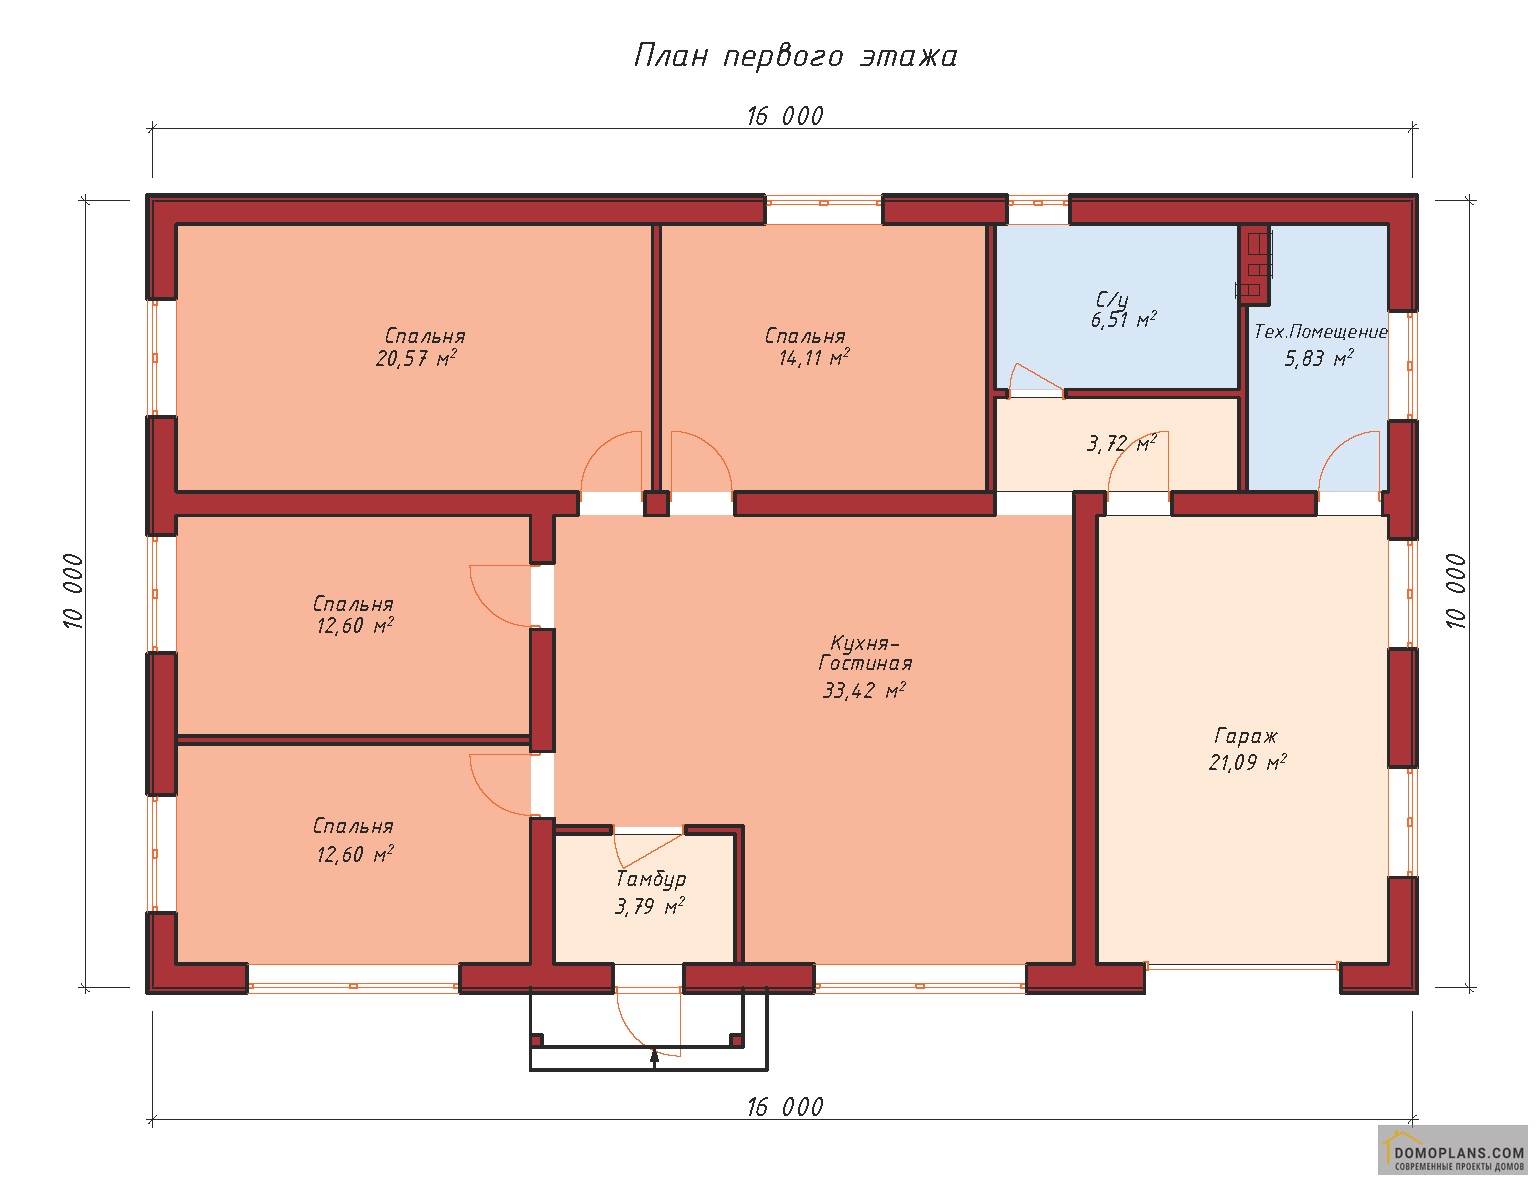 Планировка одноэтажного дома с пятью спальнями